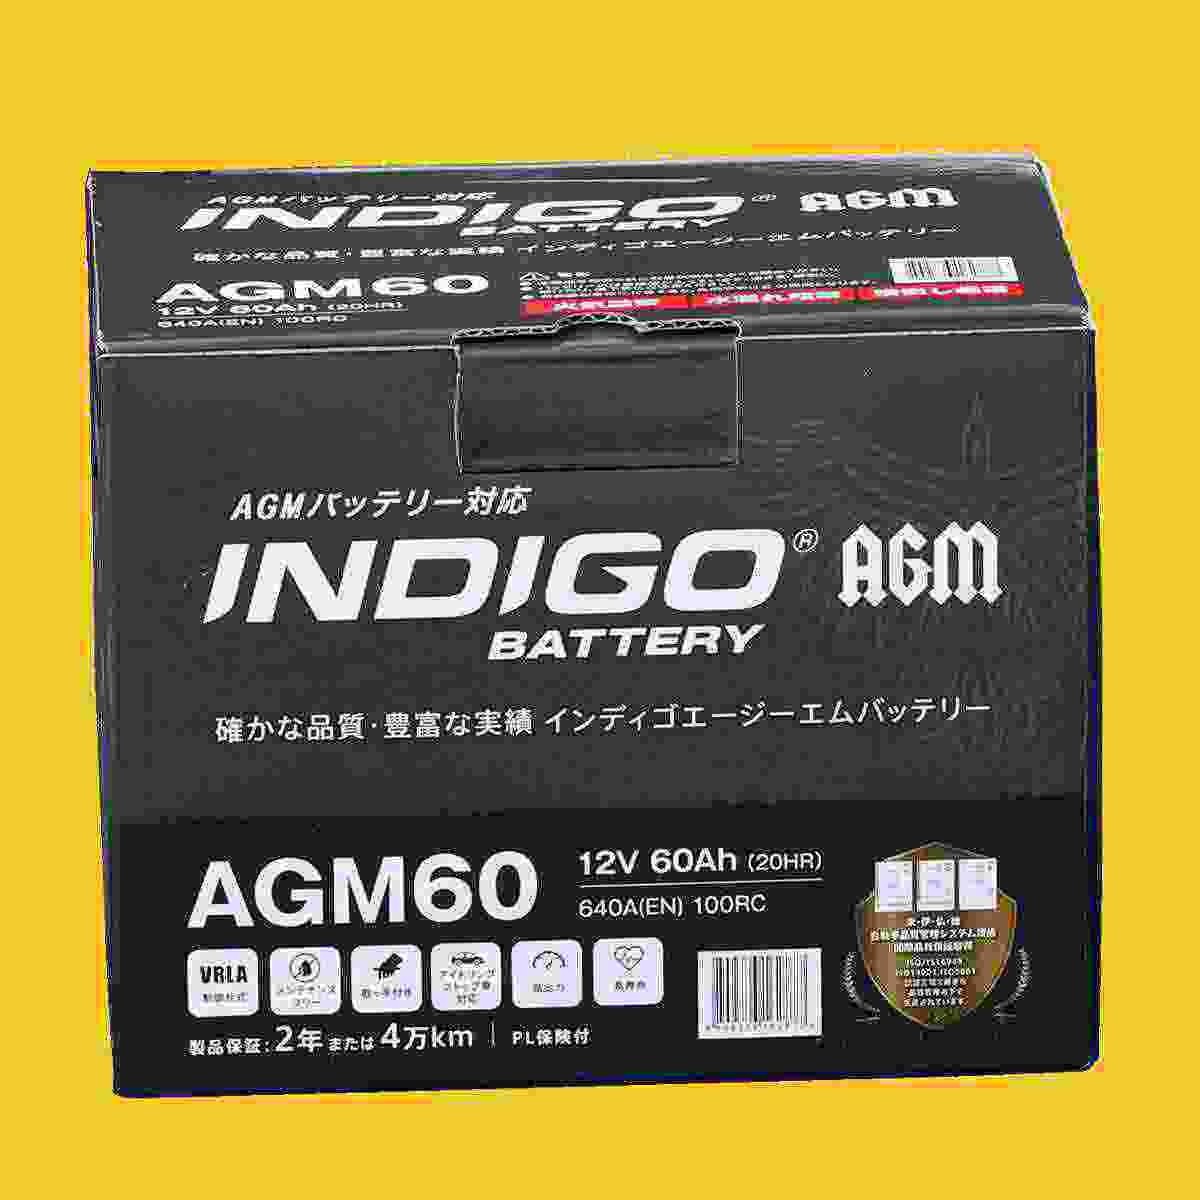 【インディゴバッテリー】AGM60 アルファロメオ ミト ABA-955142 互換:BLA-60-L2,LN2(AGM) 輸入車用 新品 保証付 即納 AGM EFB対応_画像3